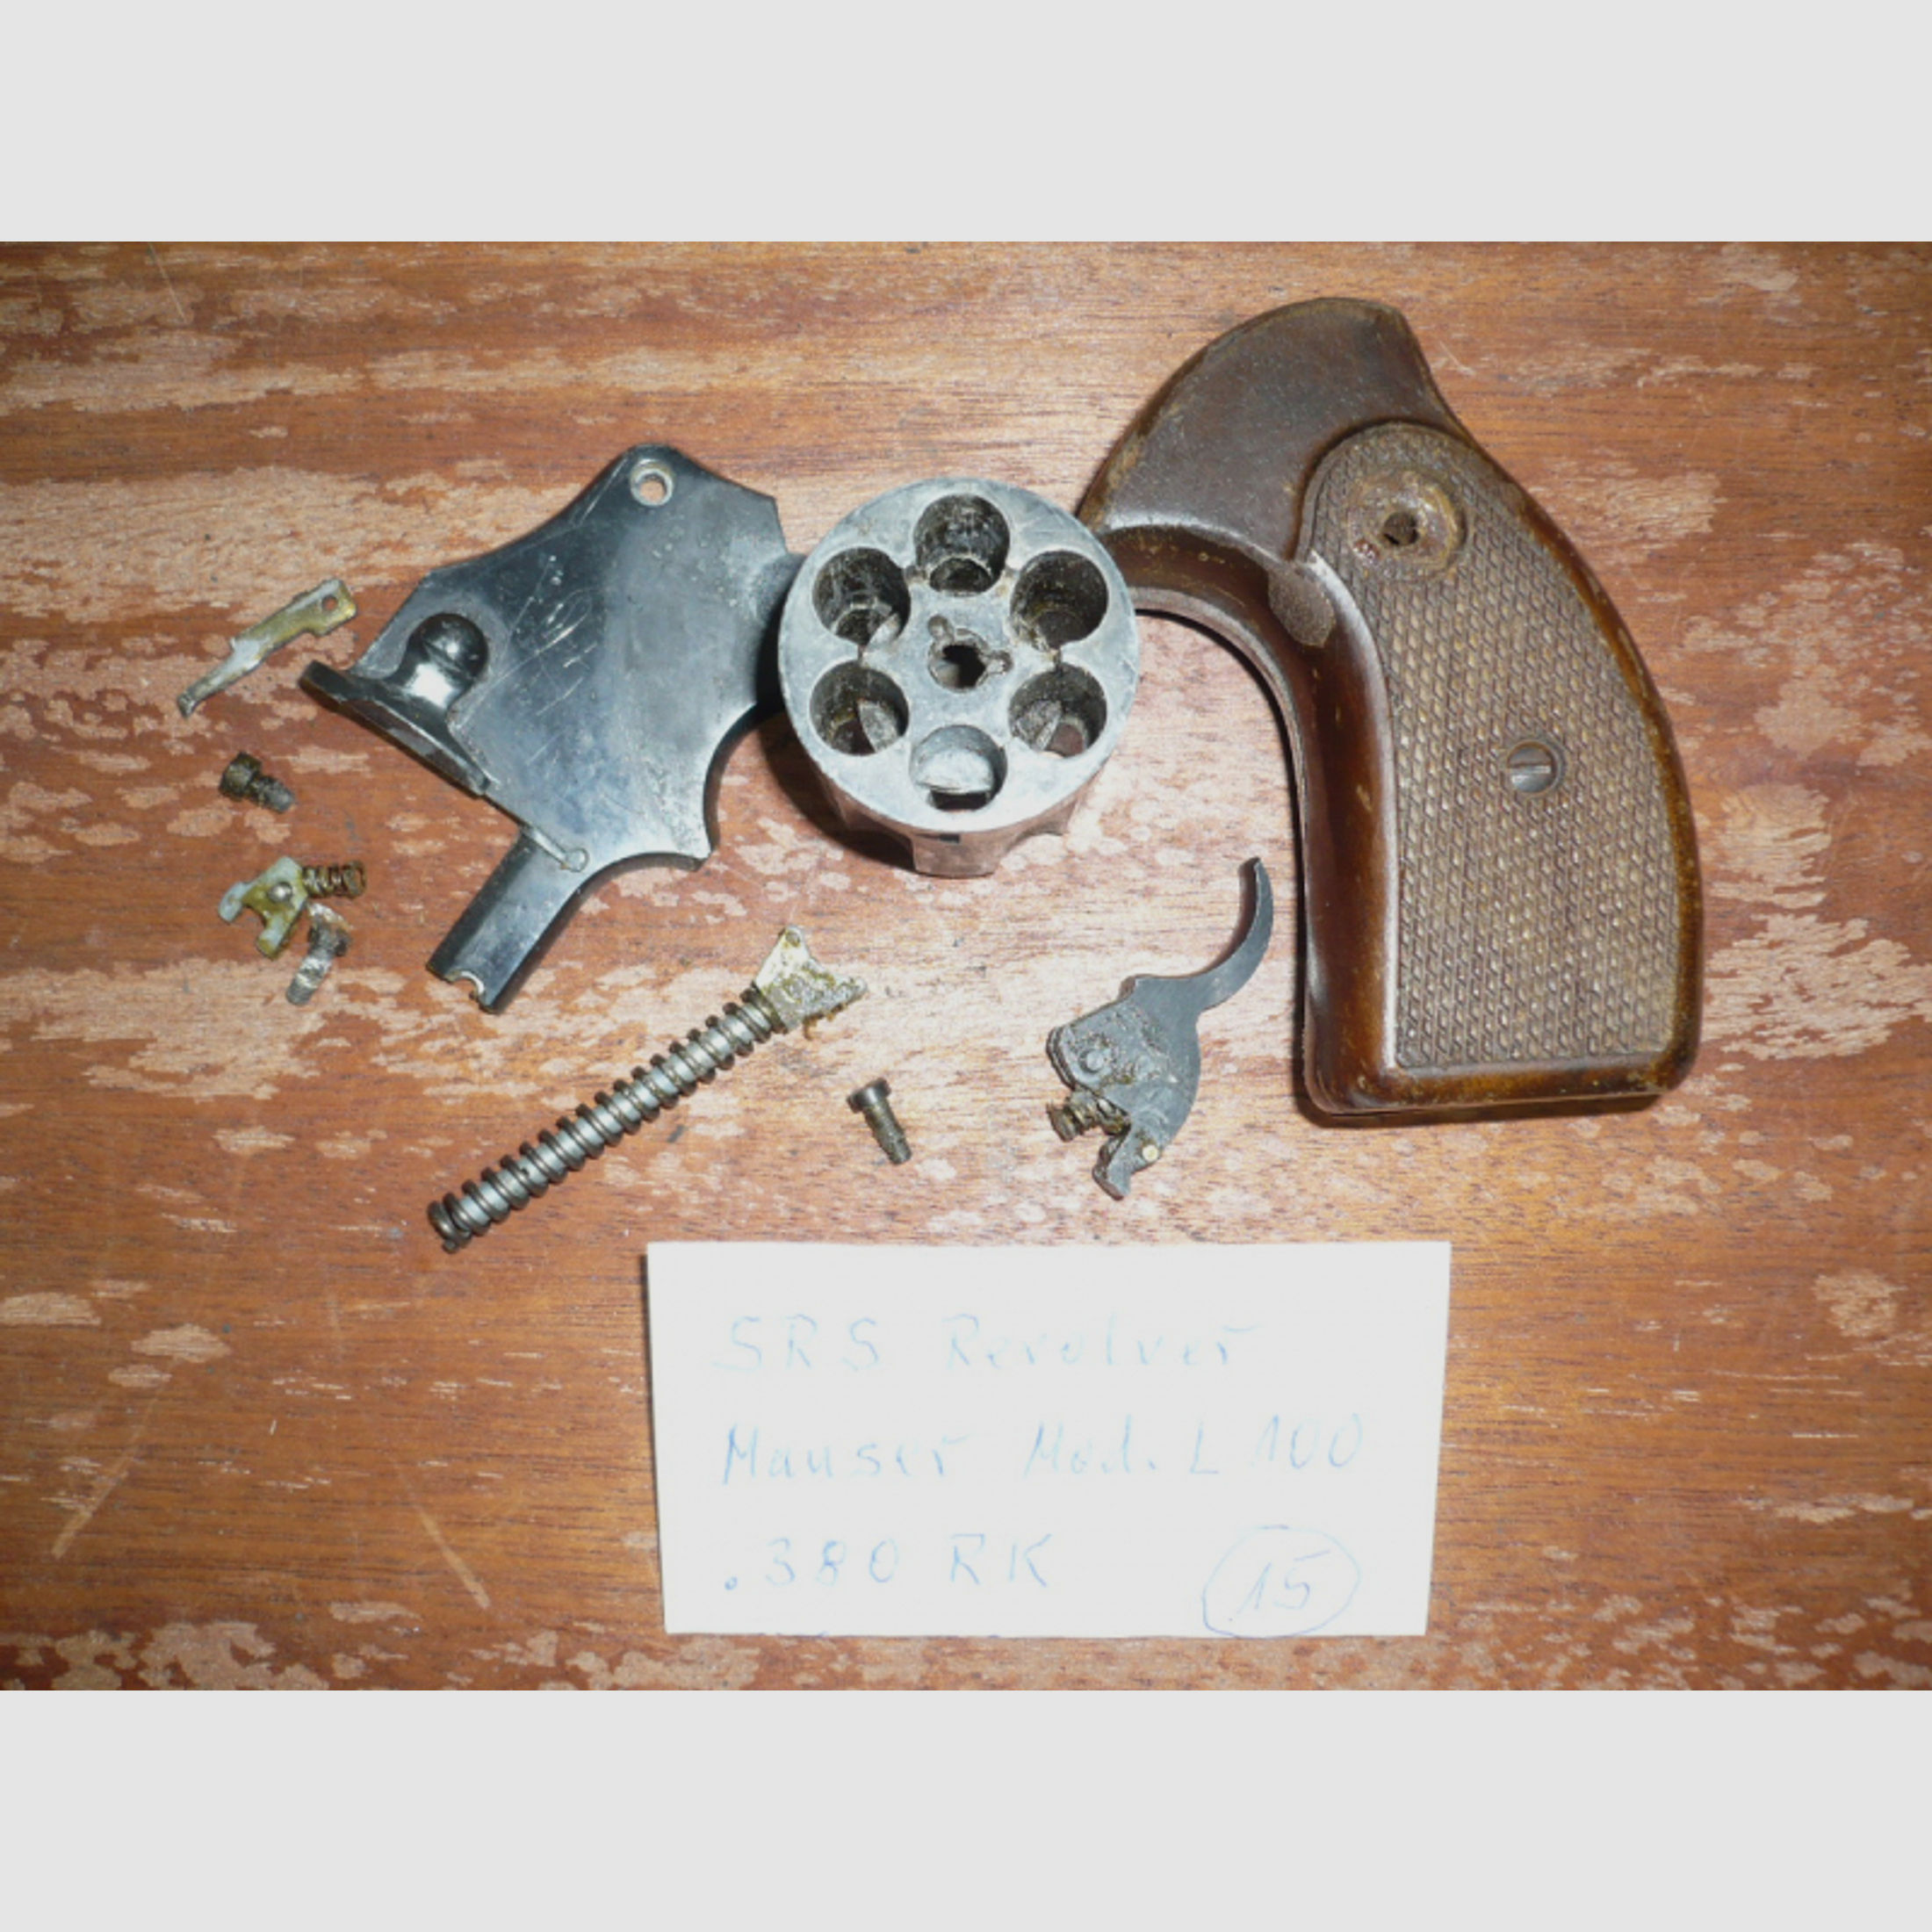 Ersatzteile für Revolver Mauser Mod. L100, Kal. .380 RK